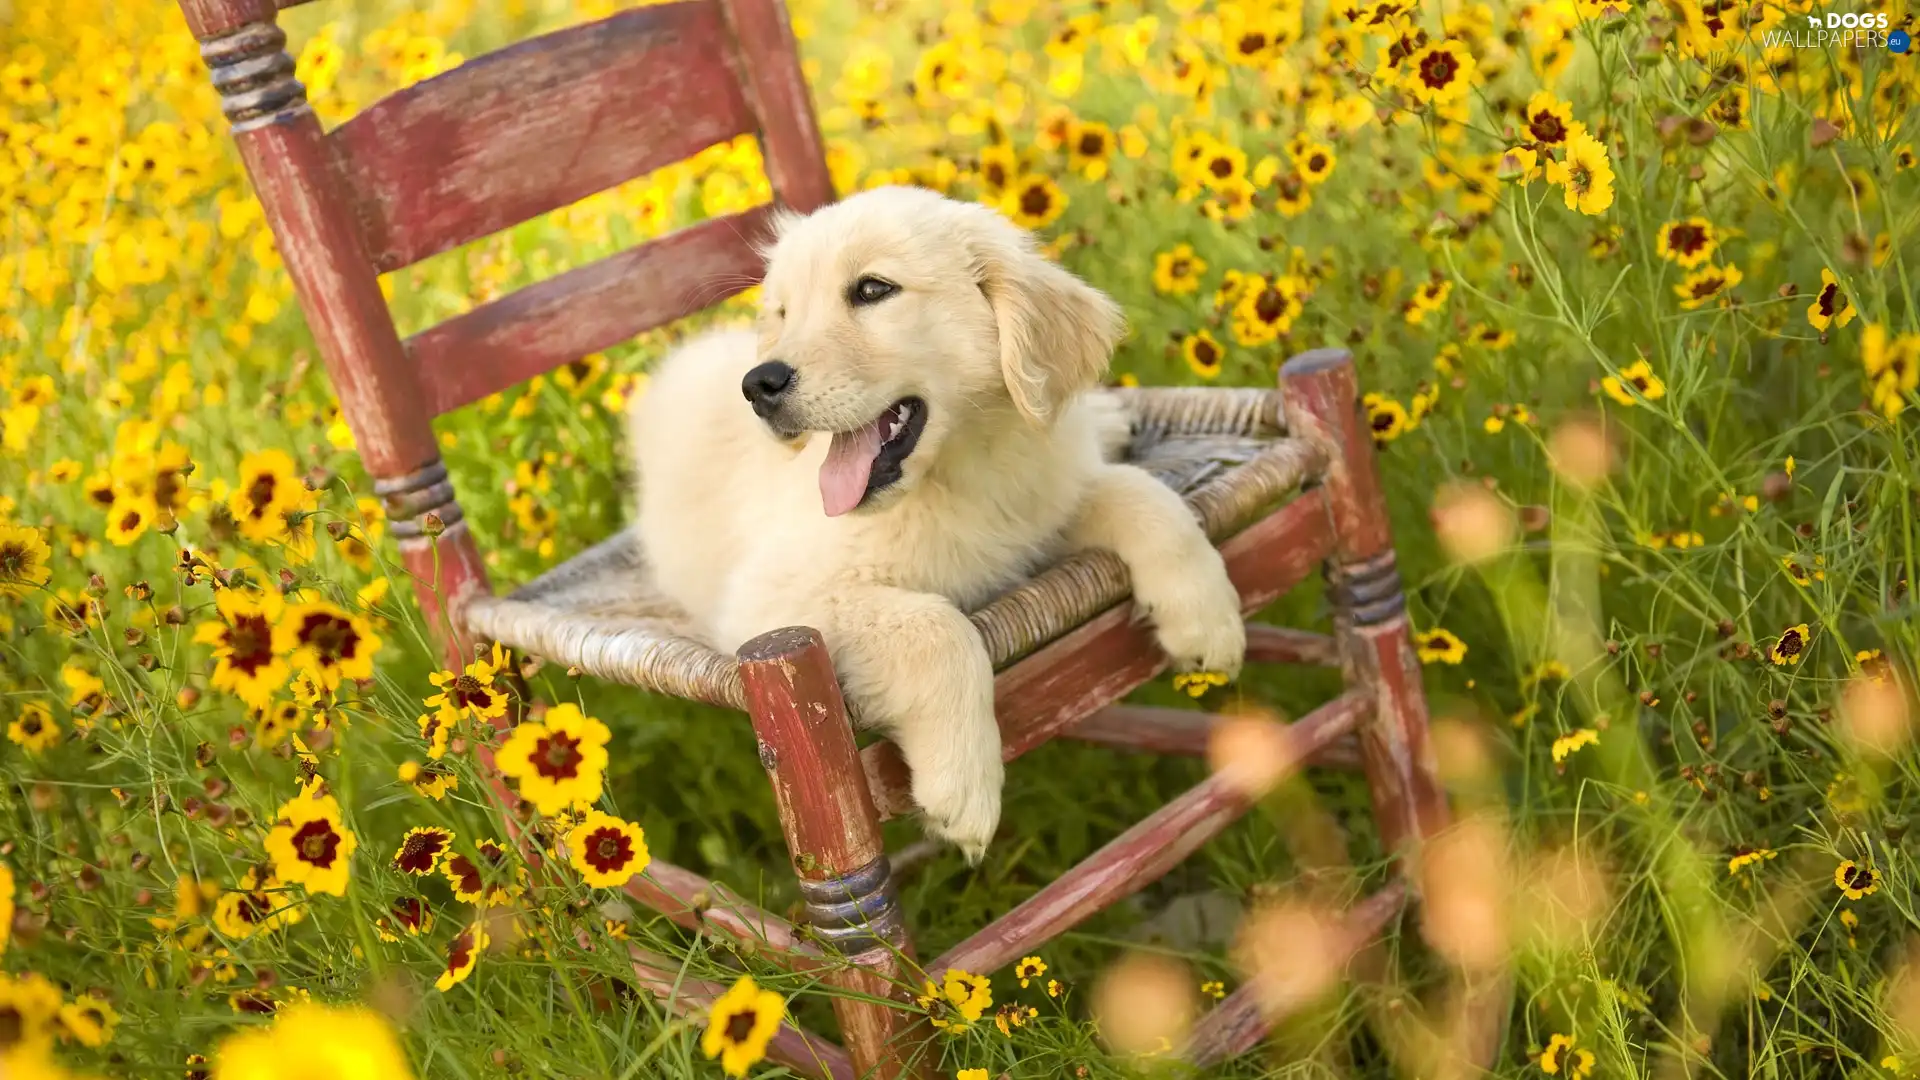 Chair, Meadow, dog